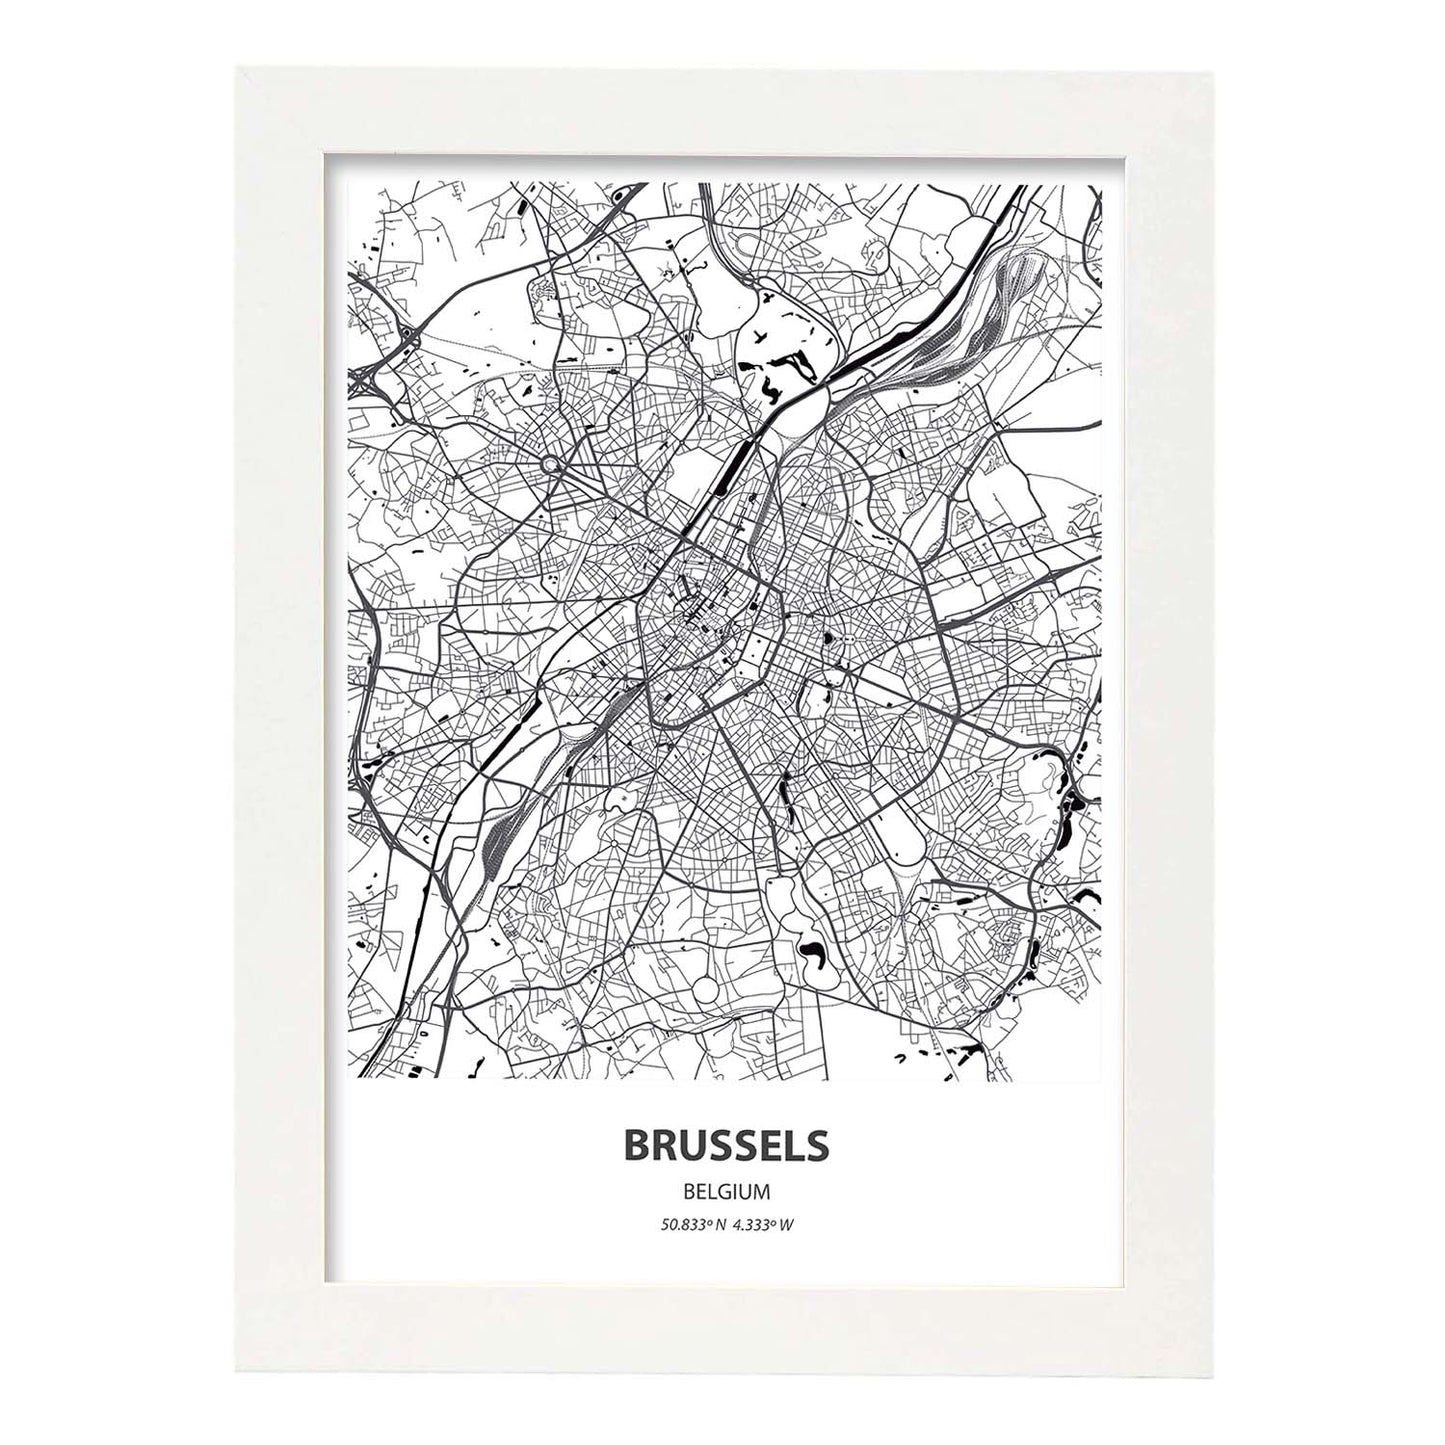 Poster con mapa de Brussels - Belgica. Láminas de ciudades de Holanda y Bélgica con mares y ríos en color negro.-Artwork-Nacnic-A3-Marco Blanco-Nacnic Estudio SL